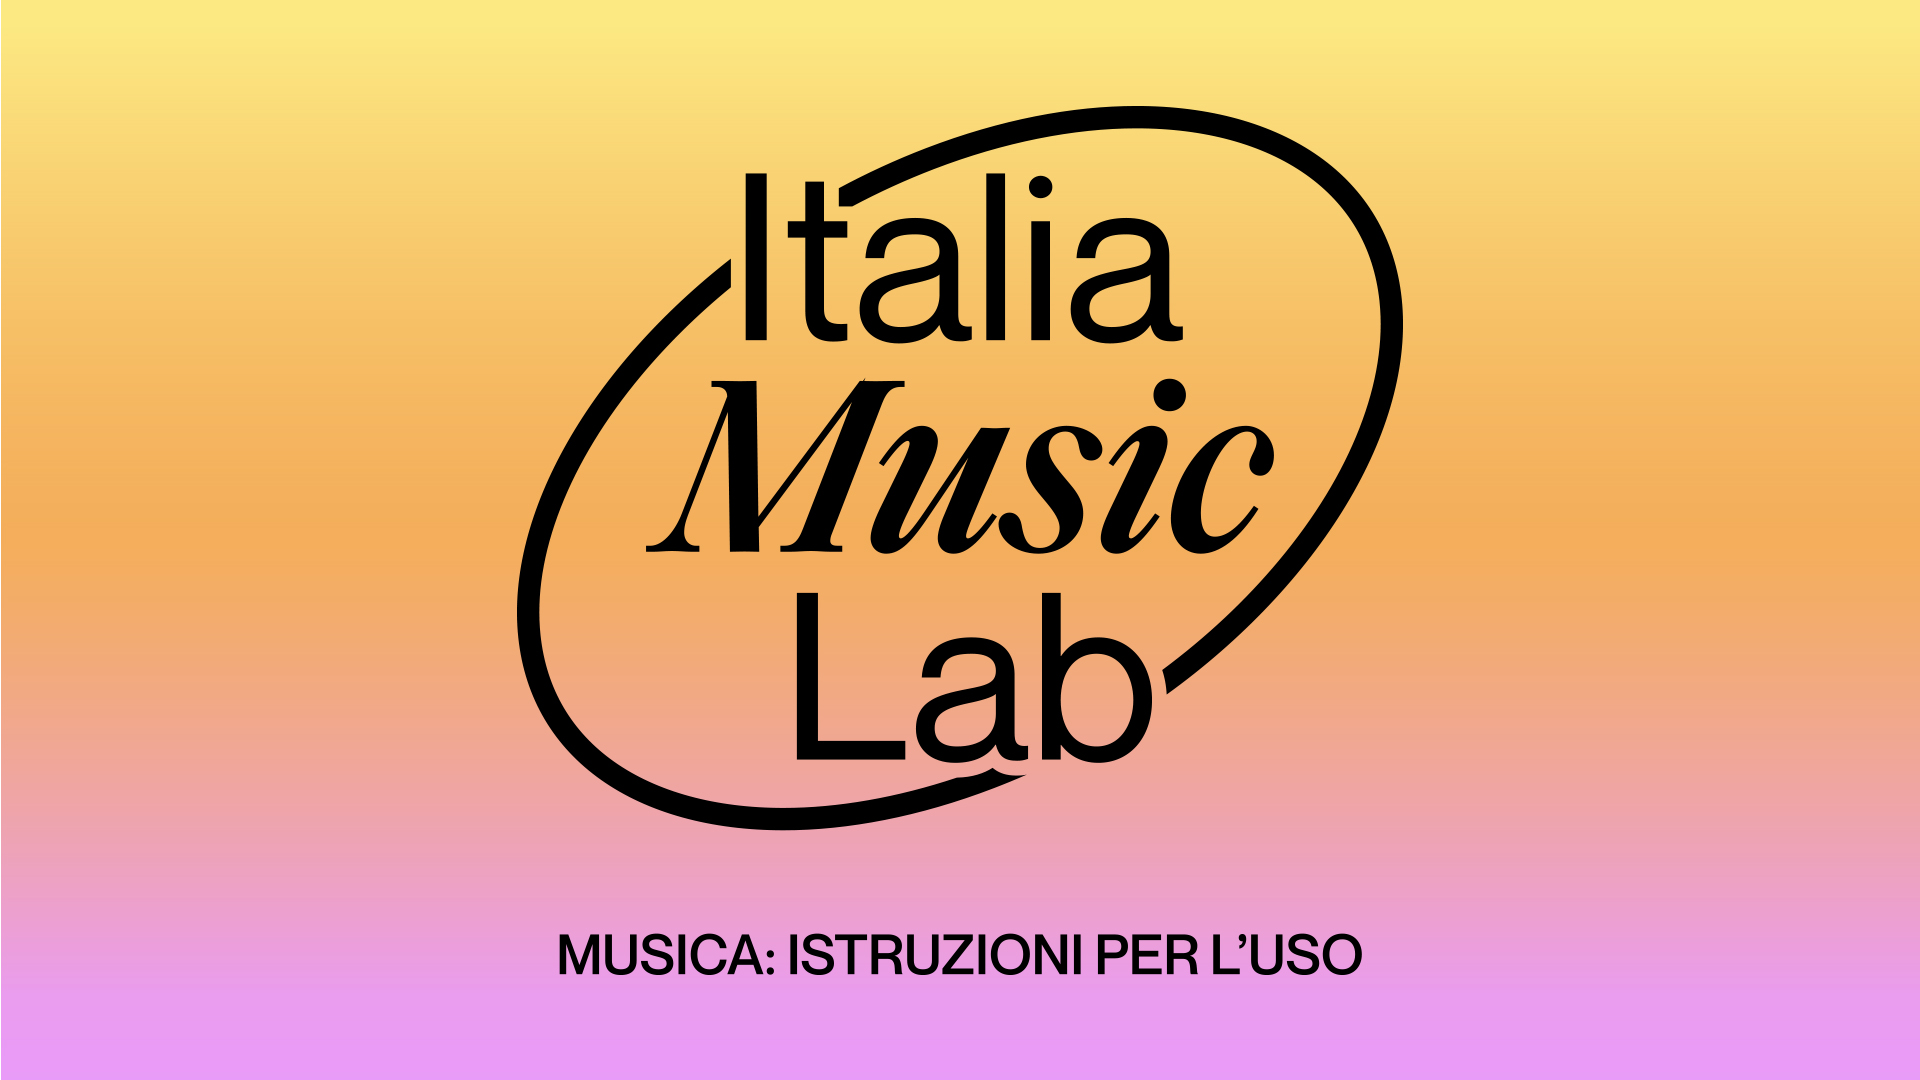 Музыка лаба. Италия Music. Music Lab магазин.